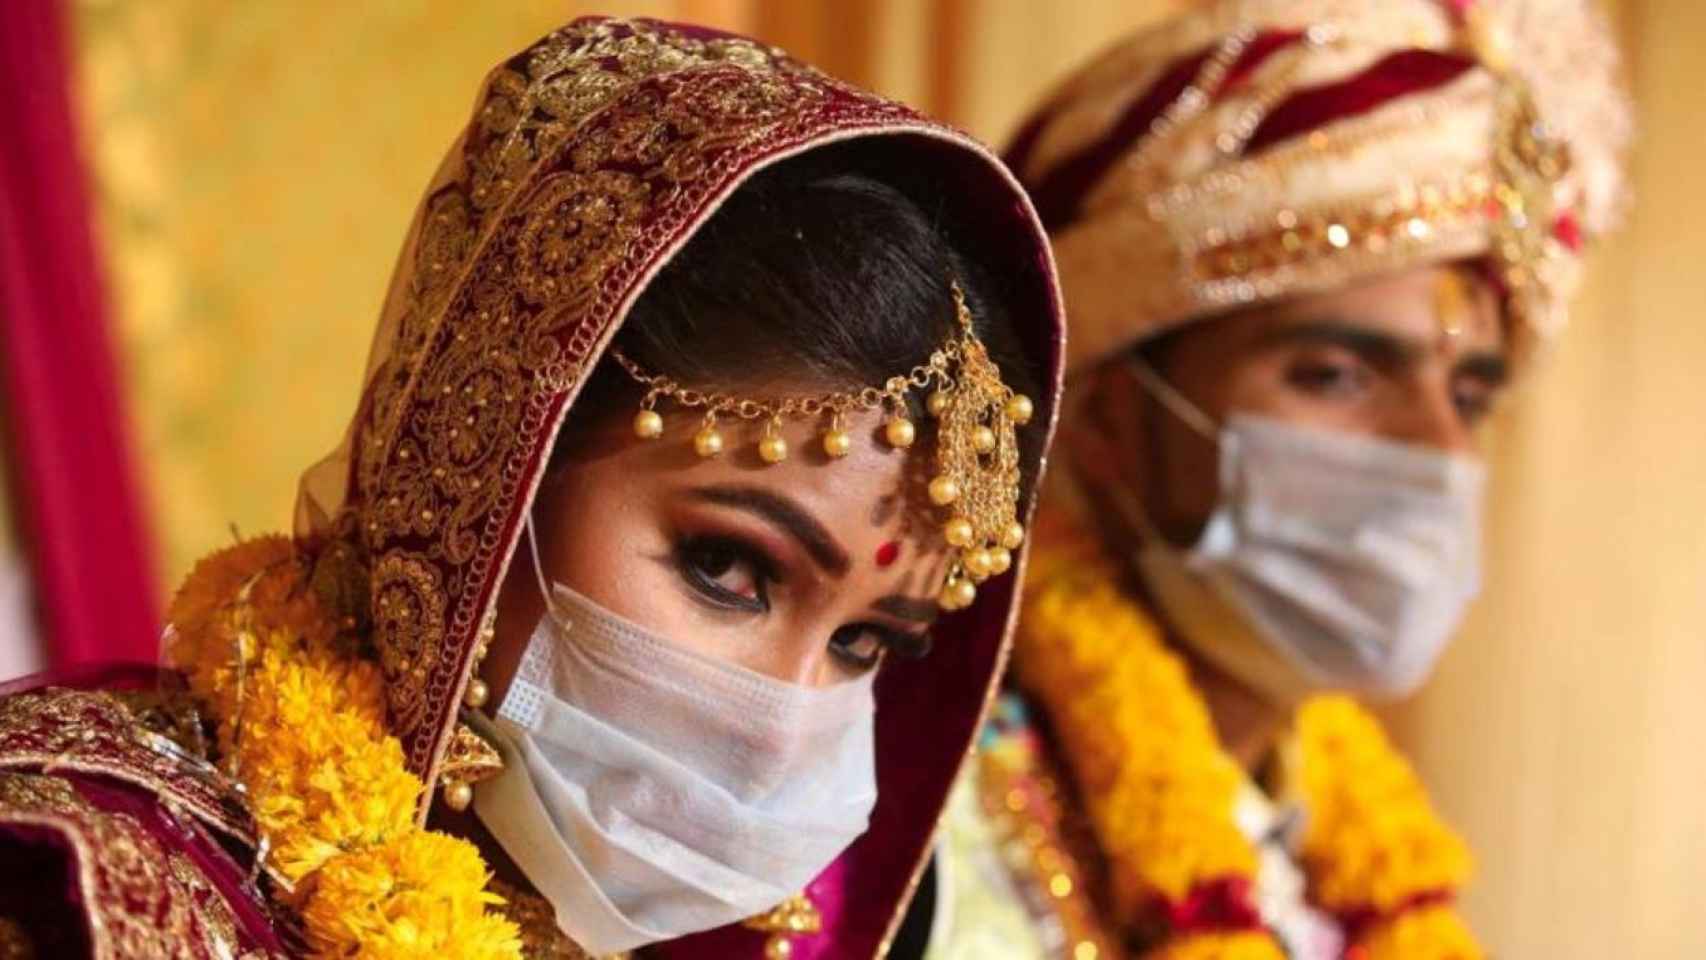 Una pareja durante una boda en India / EFE